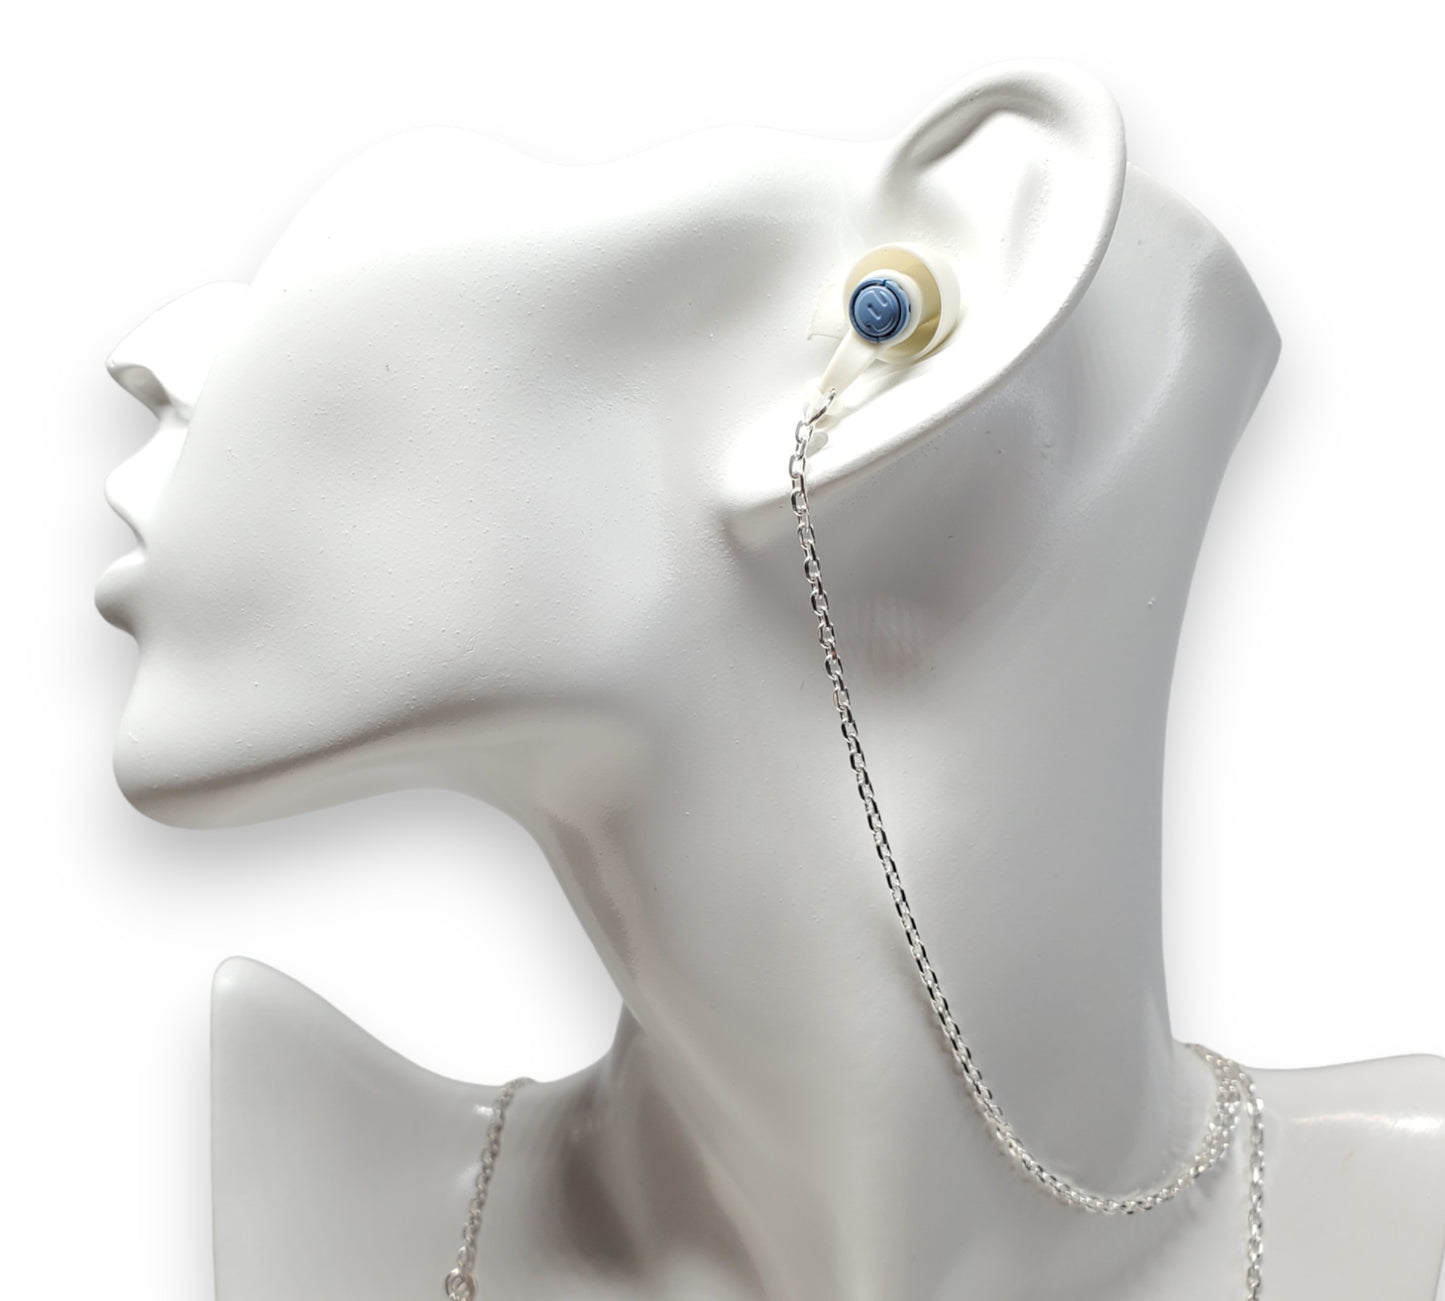 EarLink Necklace